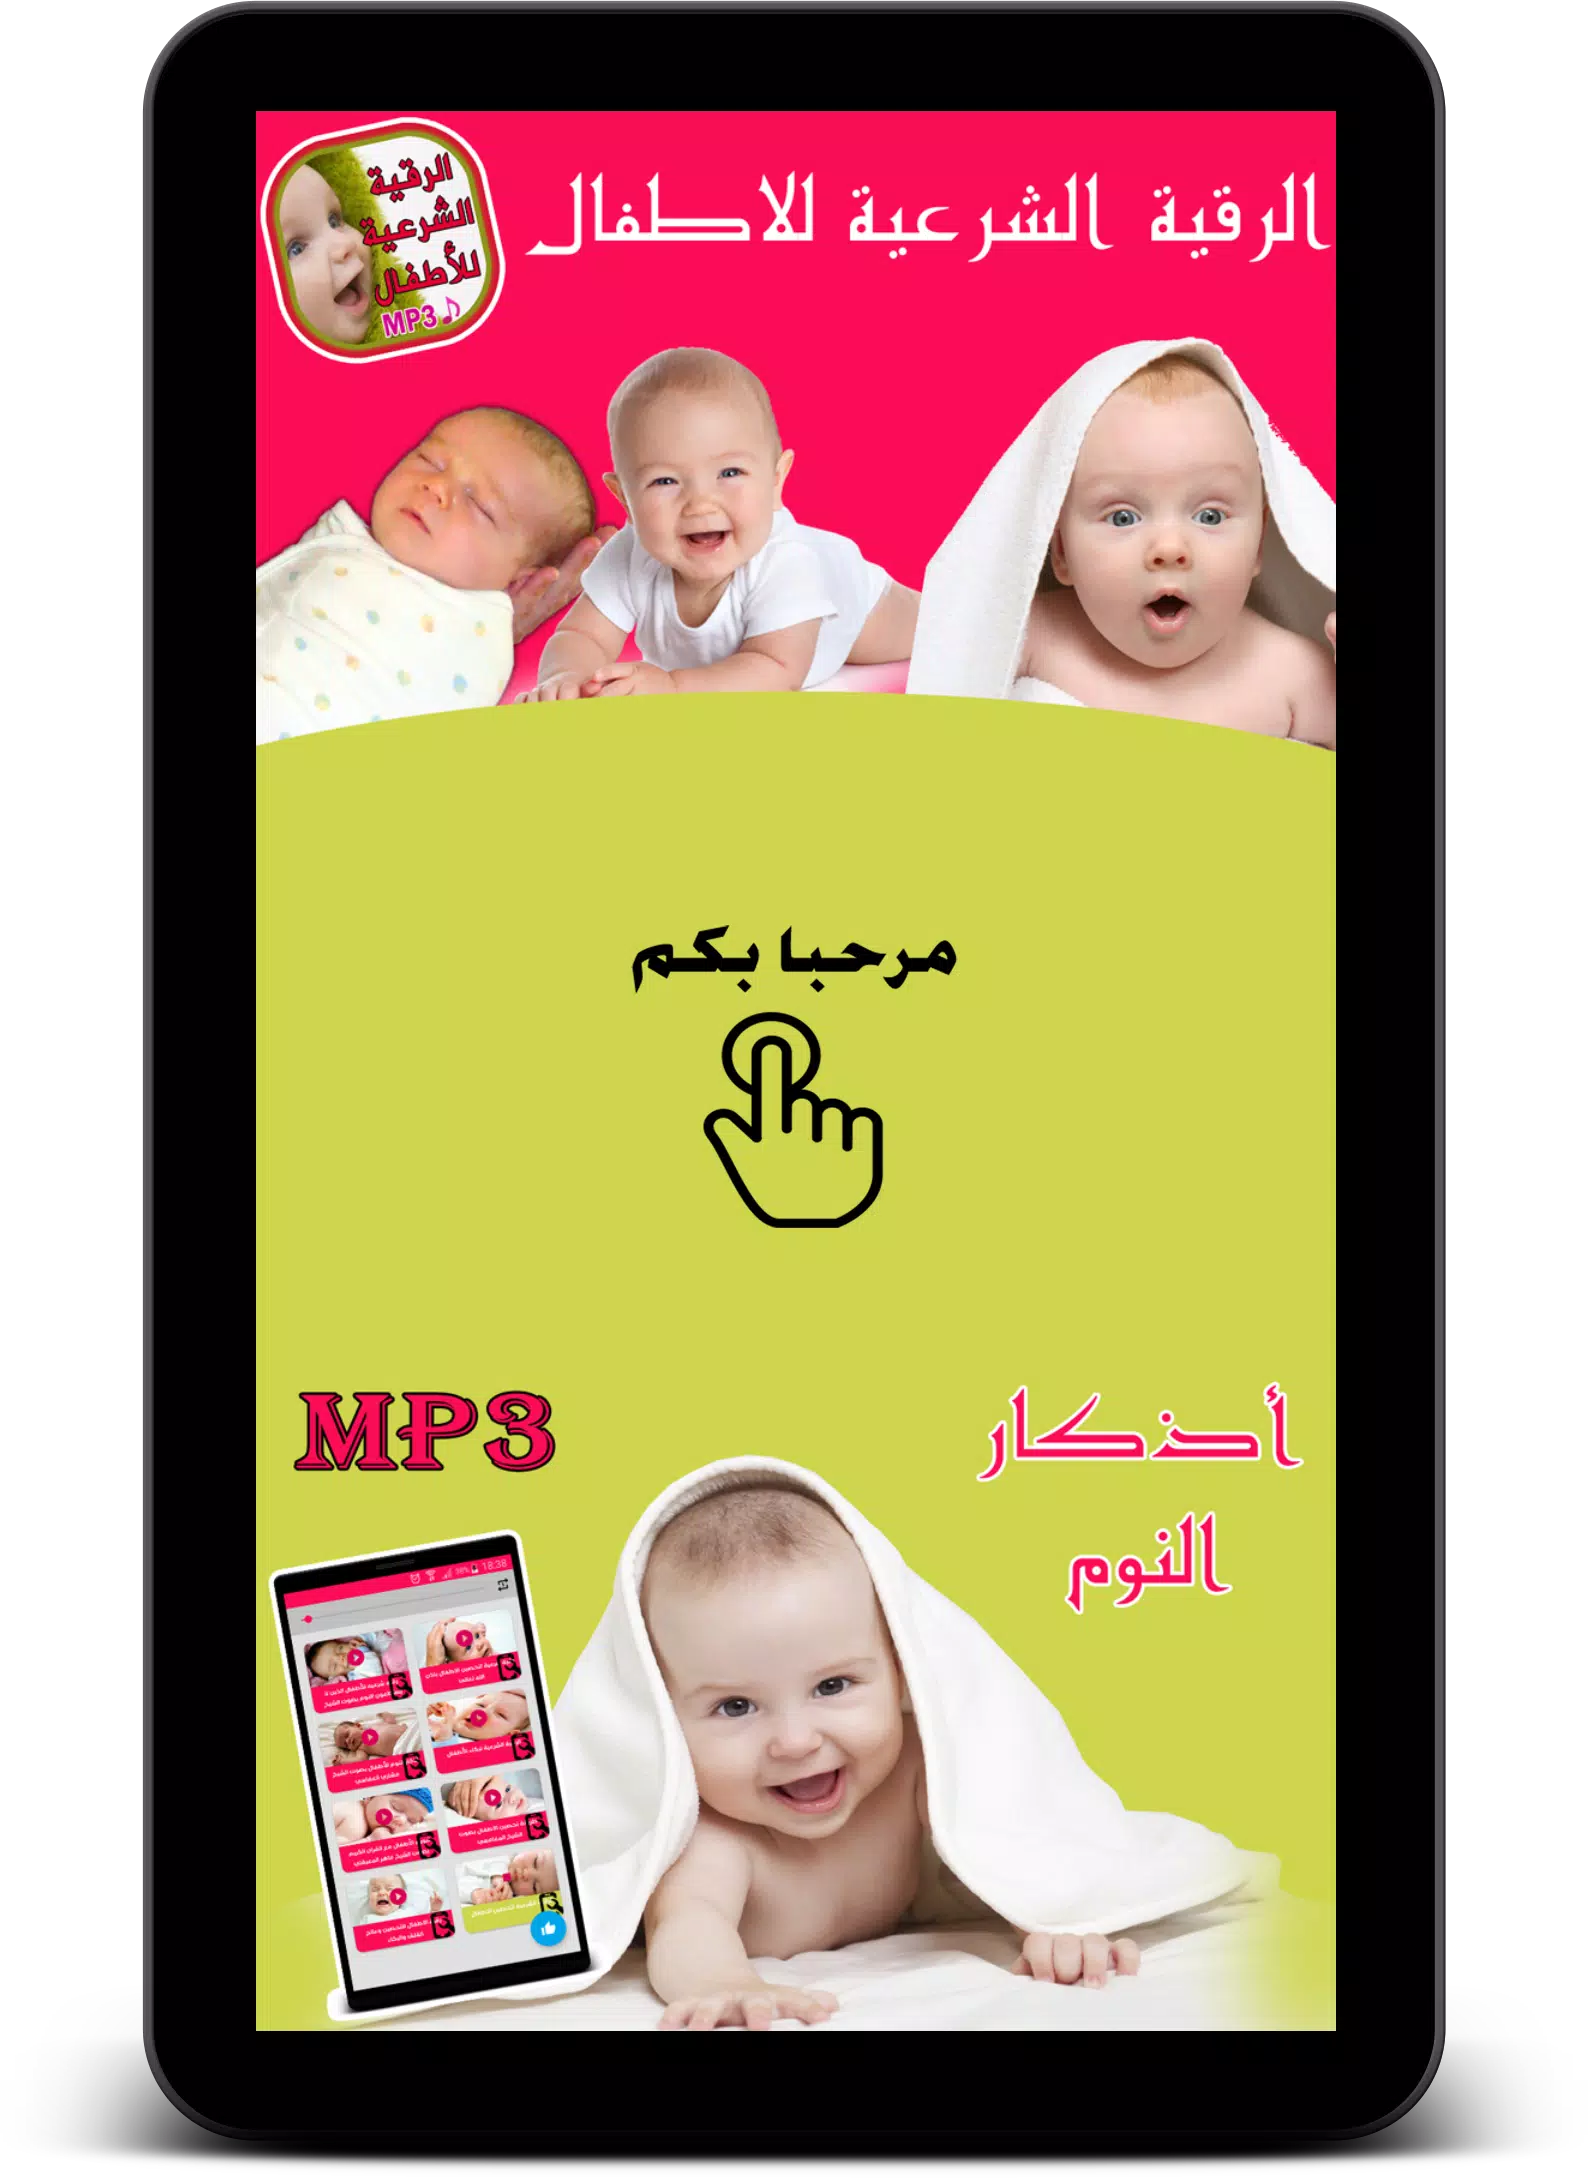 الرقية الشرعية لتحصين الاطفال APK for Android Download